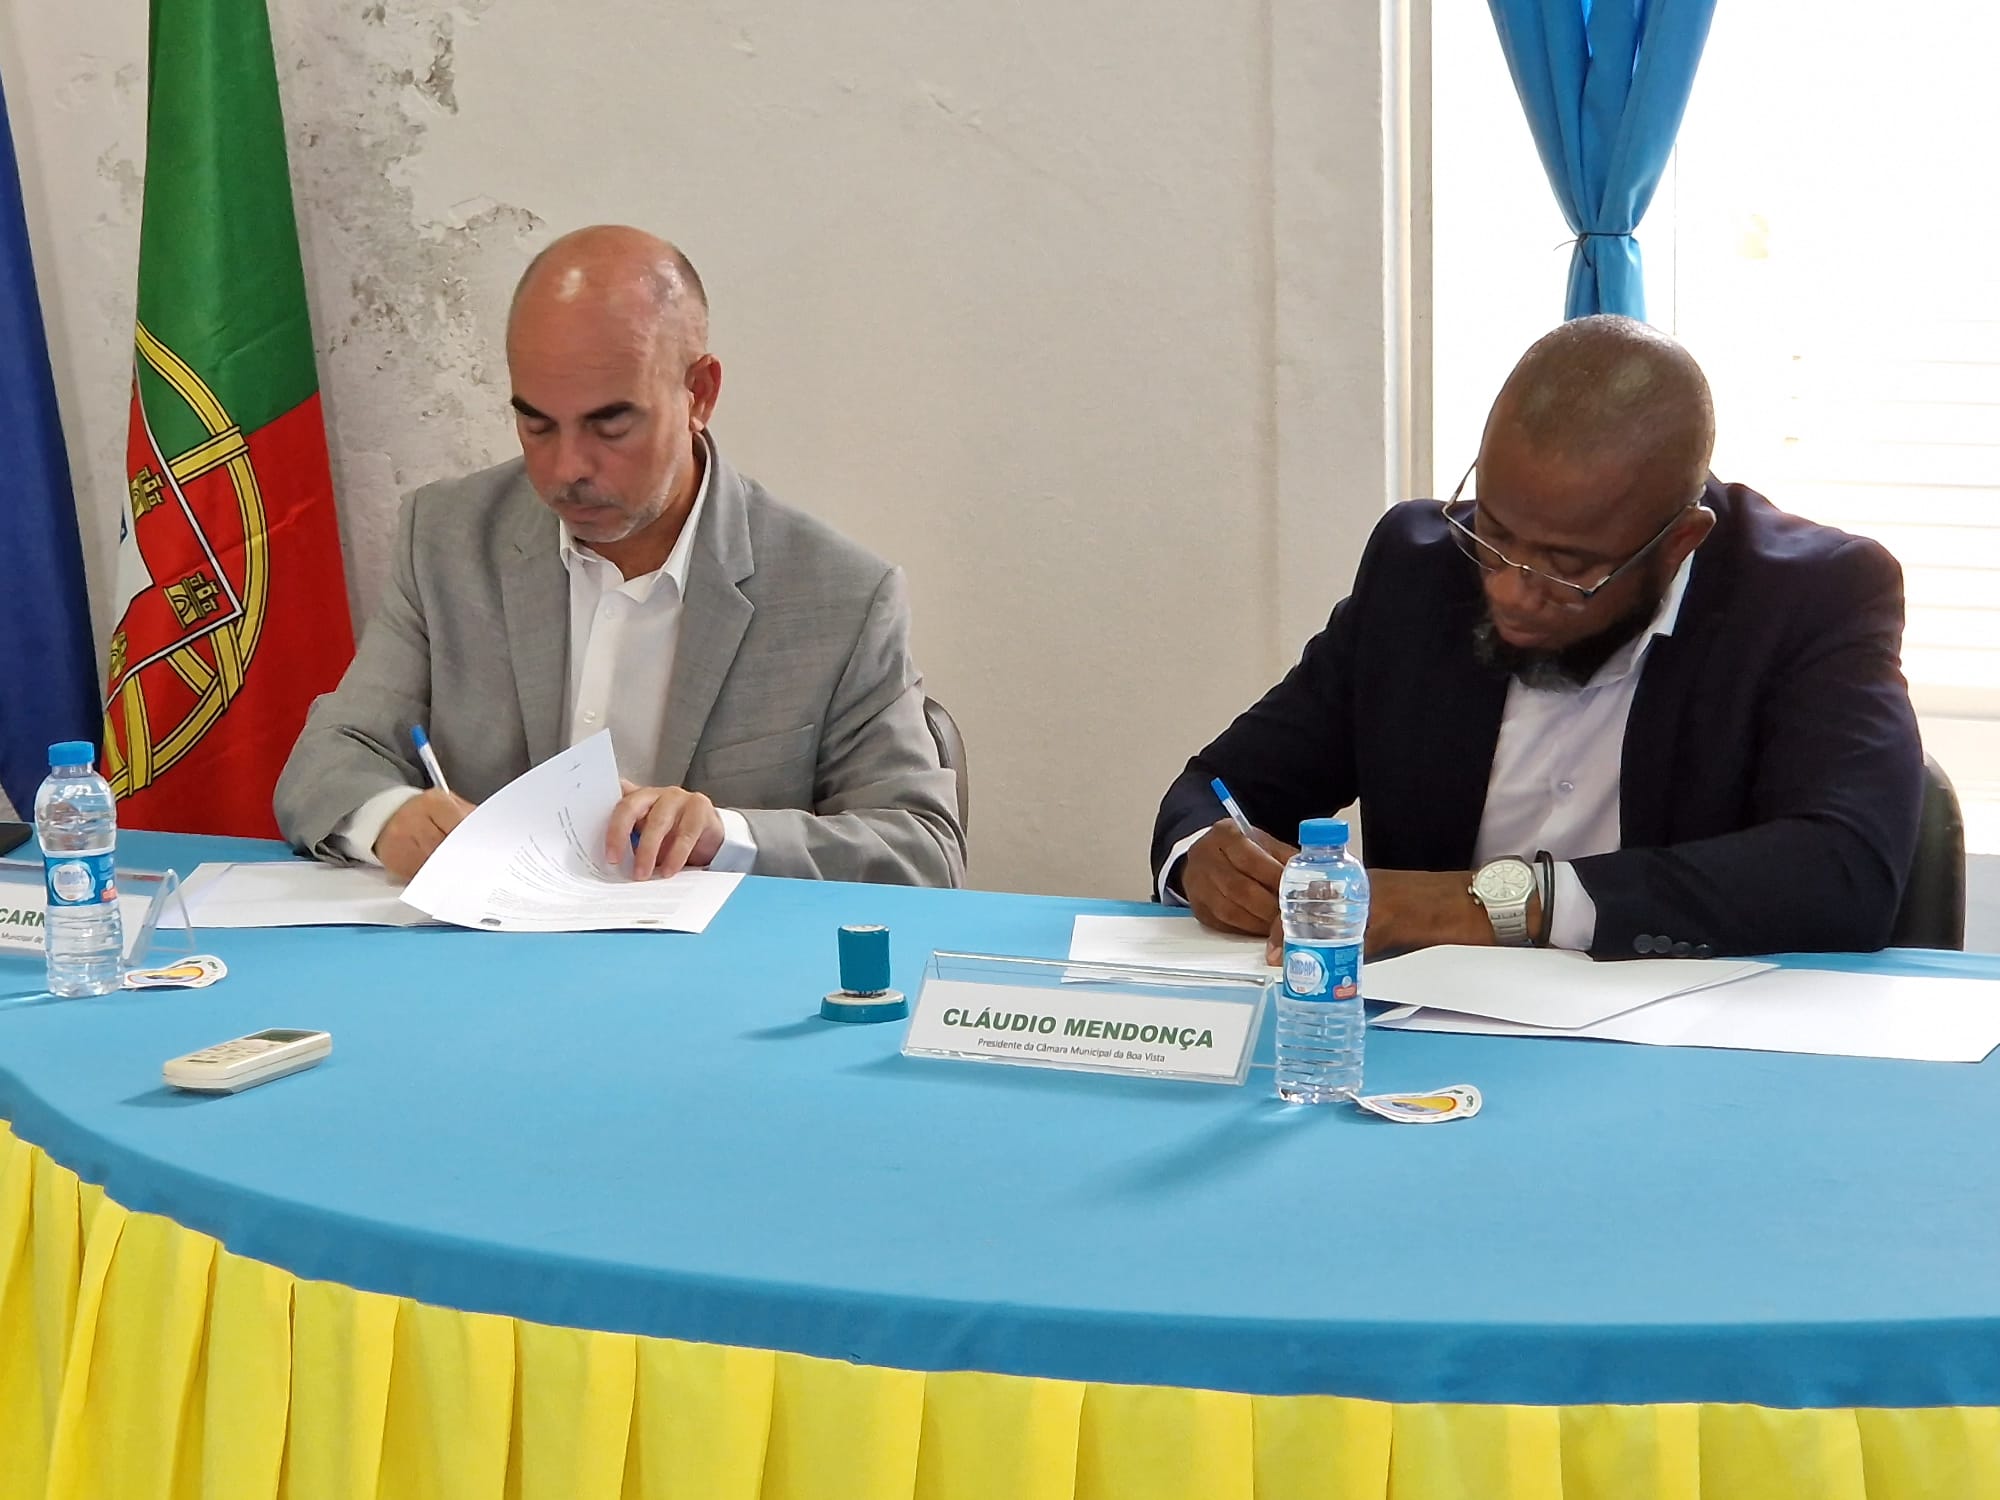 Municípios de Lagoa e Boa Vista (Cabo Verde) celebram protocolo de Geminação